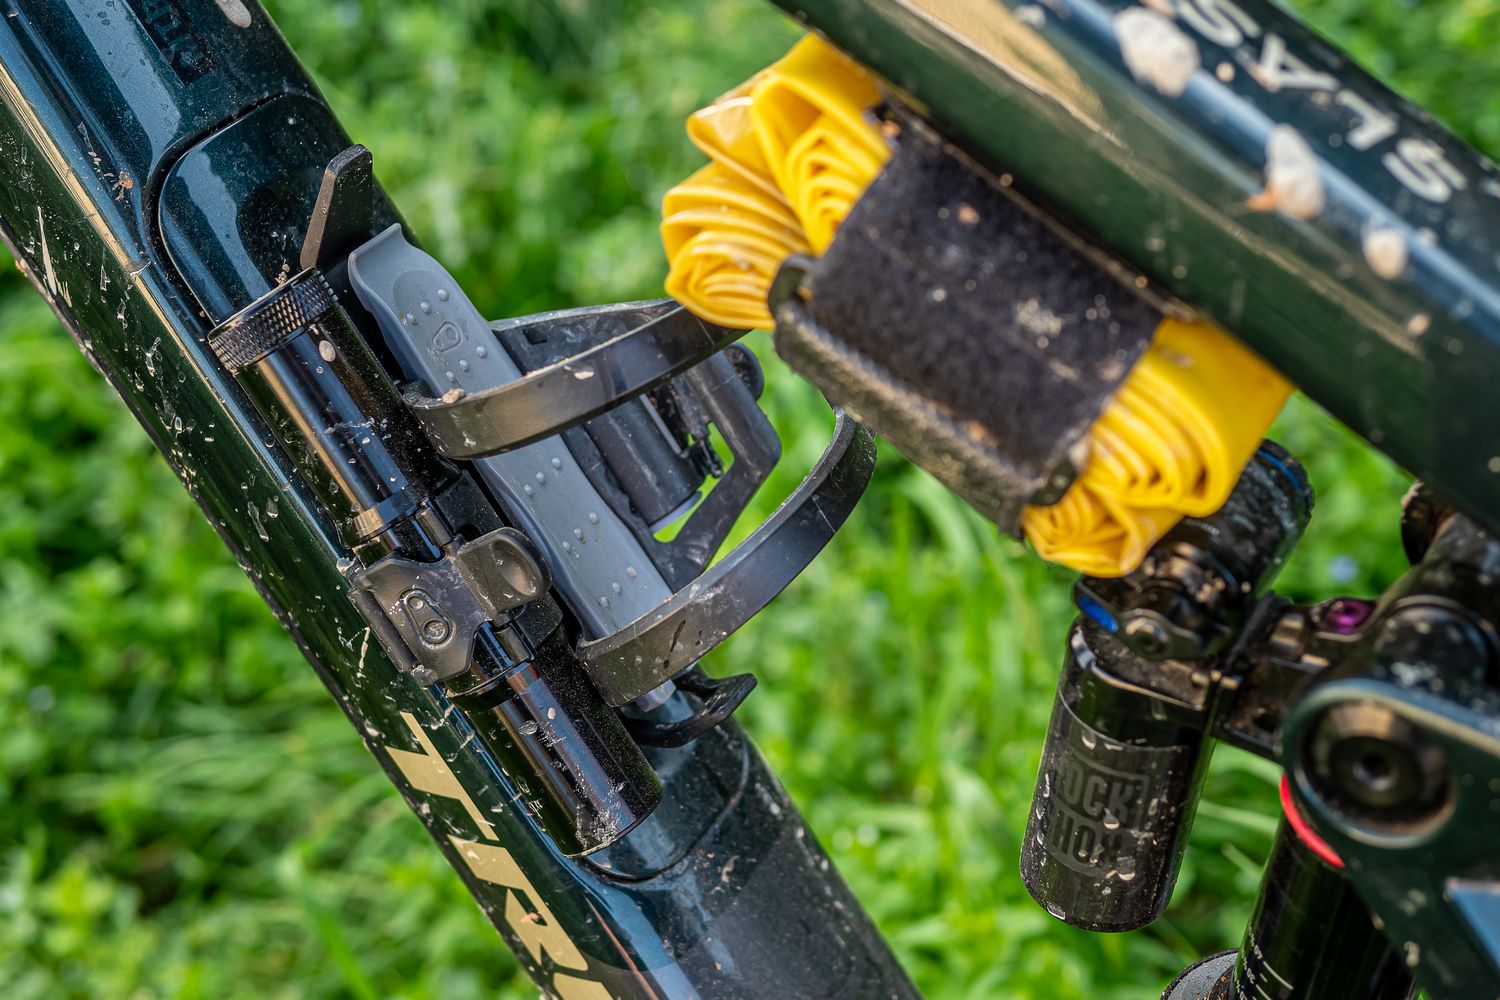 Migliora la tua bici spendendo poco - supporto tool sul telaio